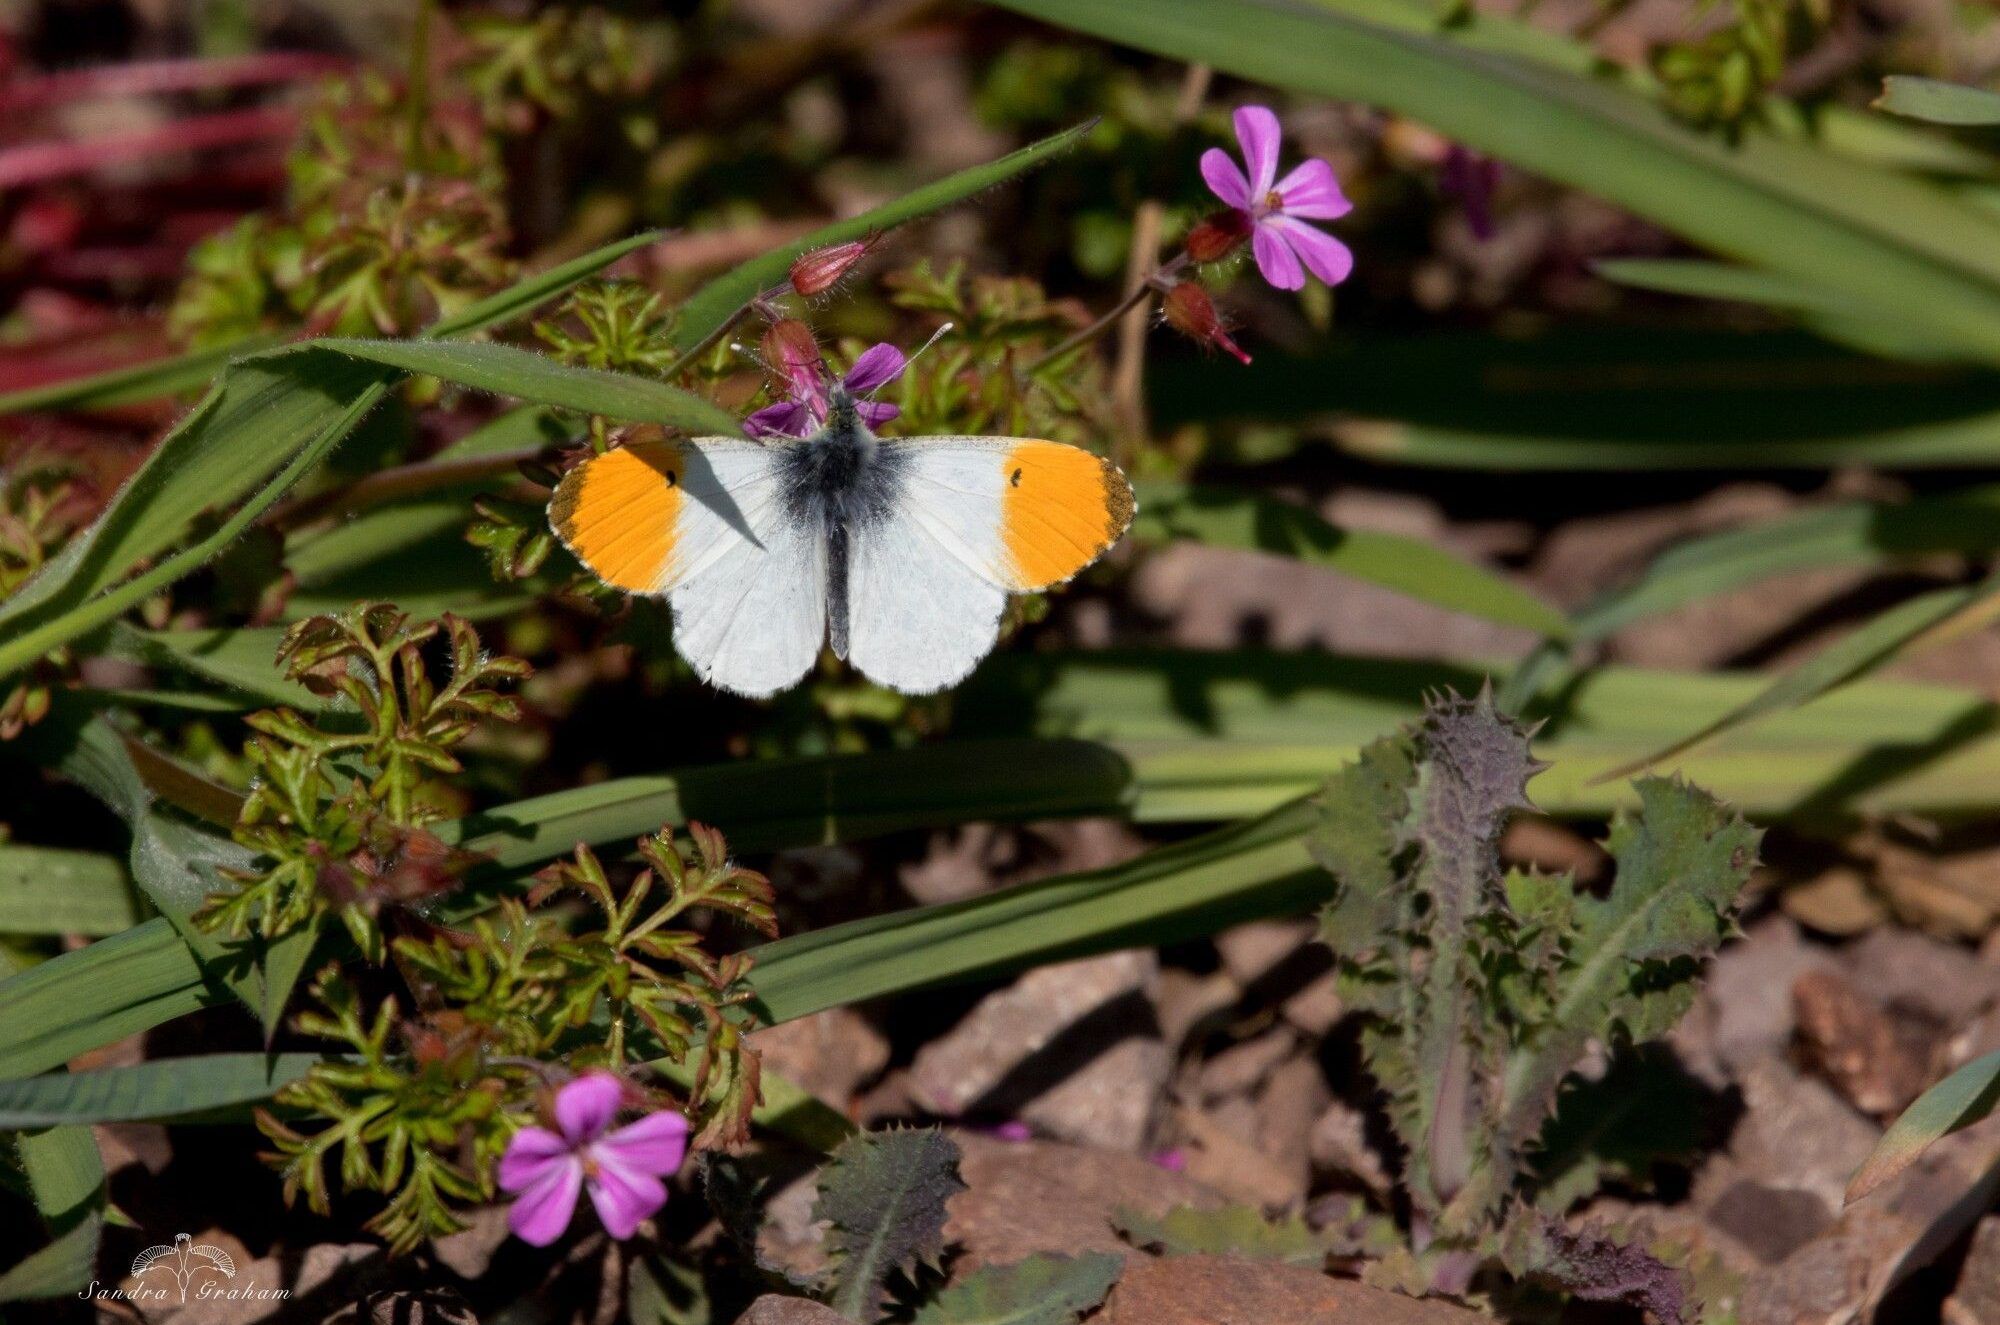 Orange-tip-butterfly-Sandra-Graham-smaller-aspect-ratio-540-358